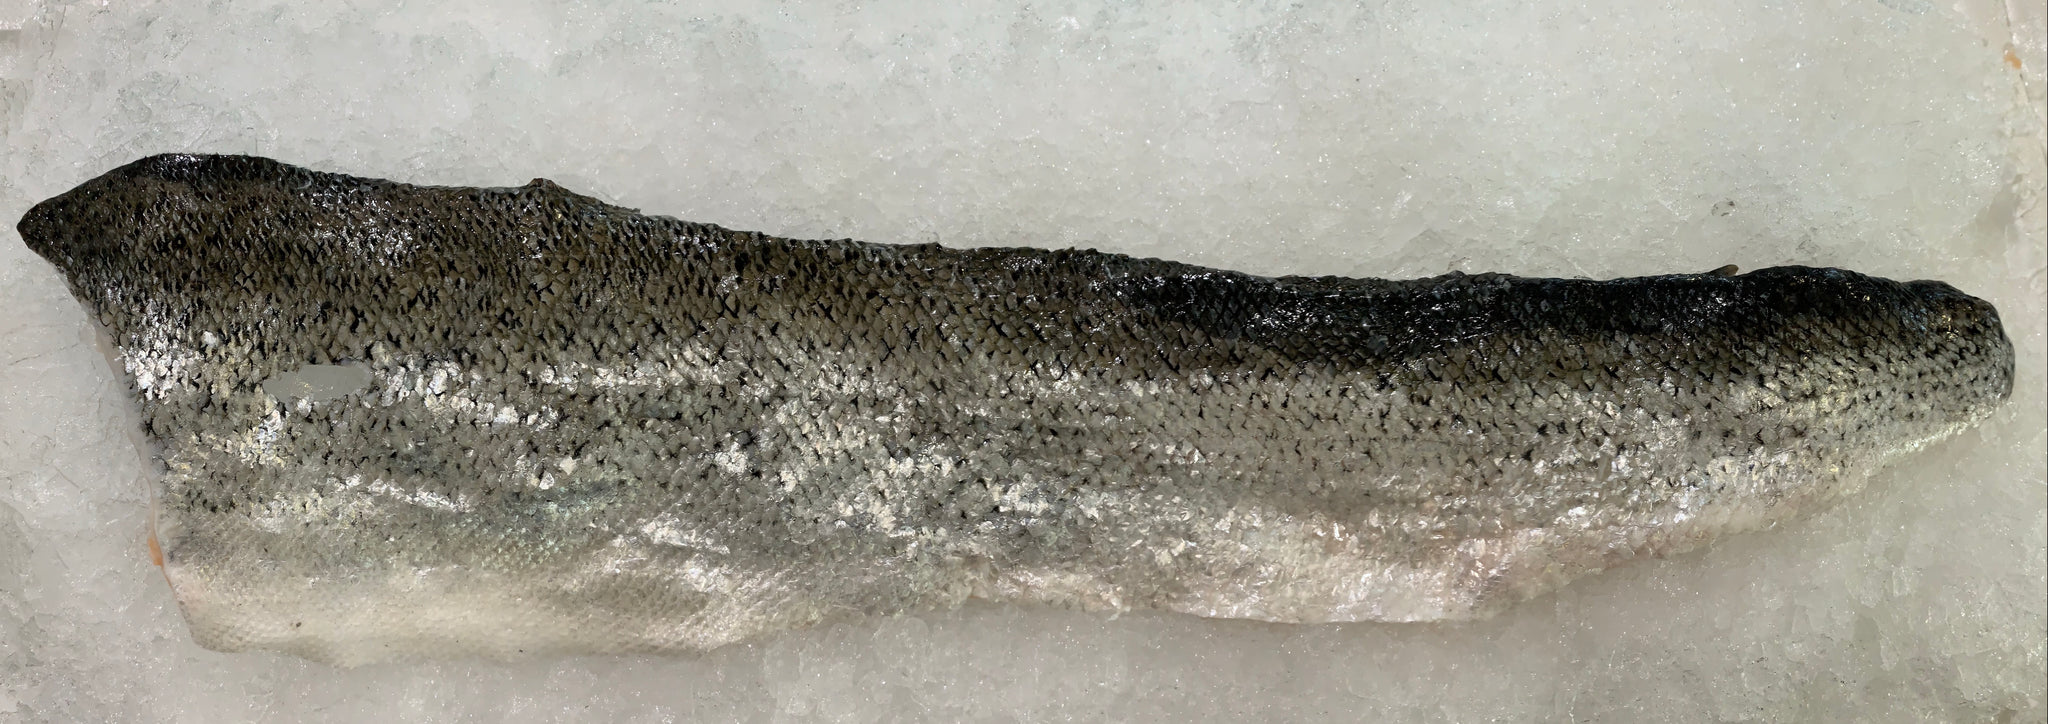 Salmon Skin - Fresh, Scaled